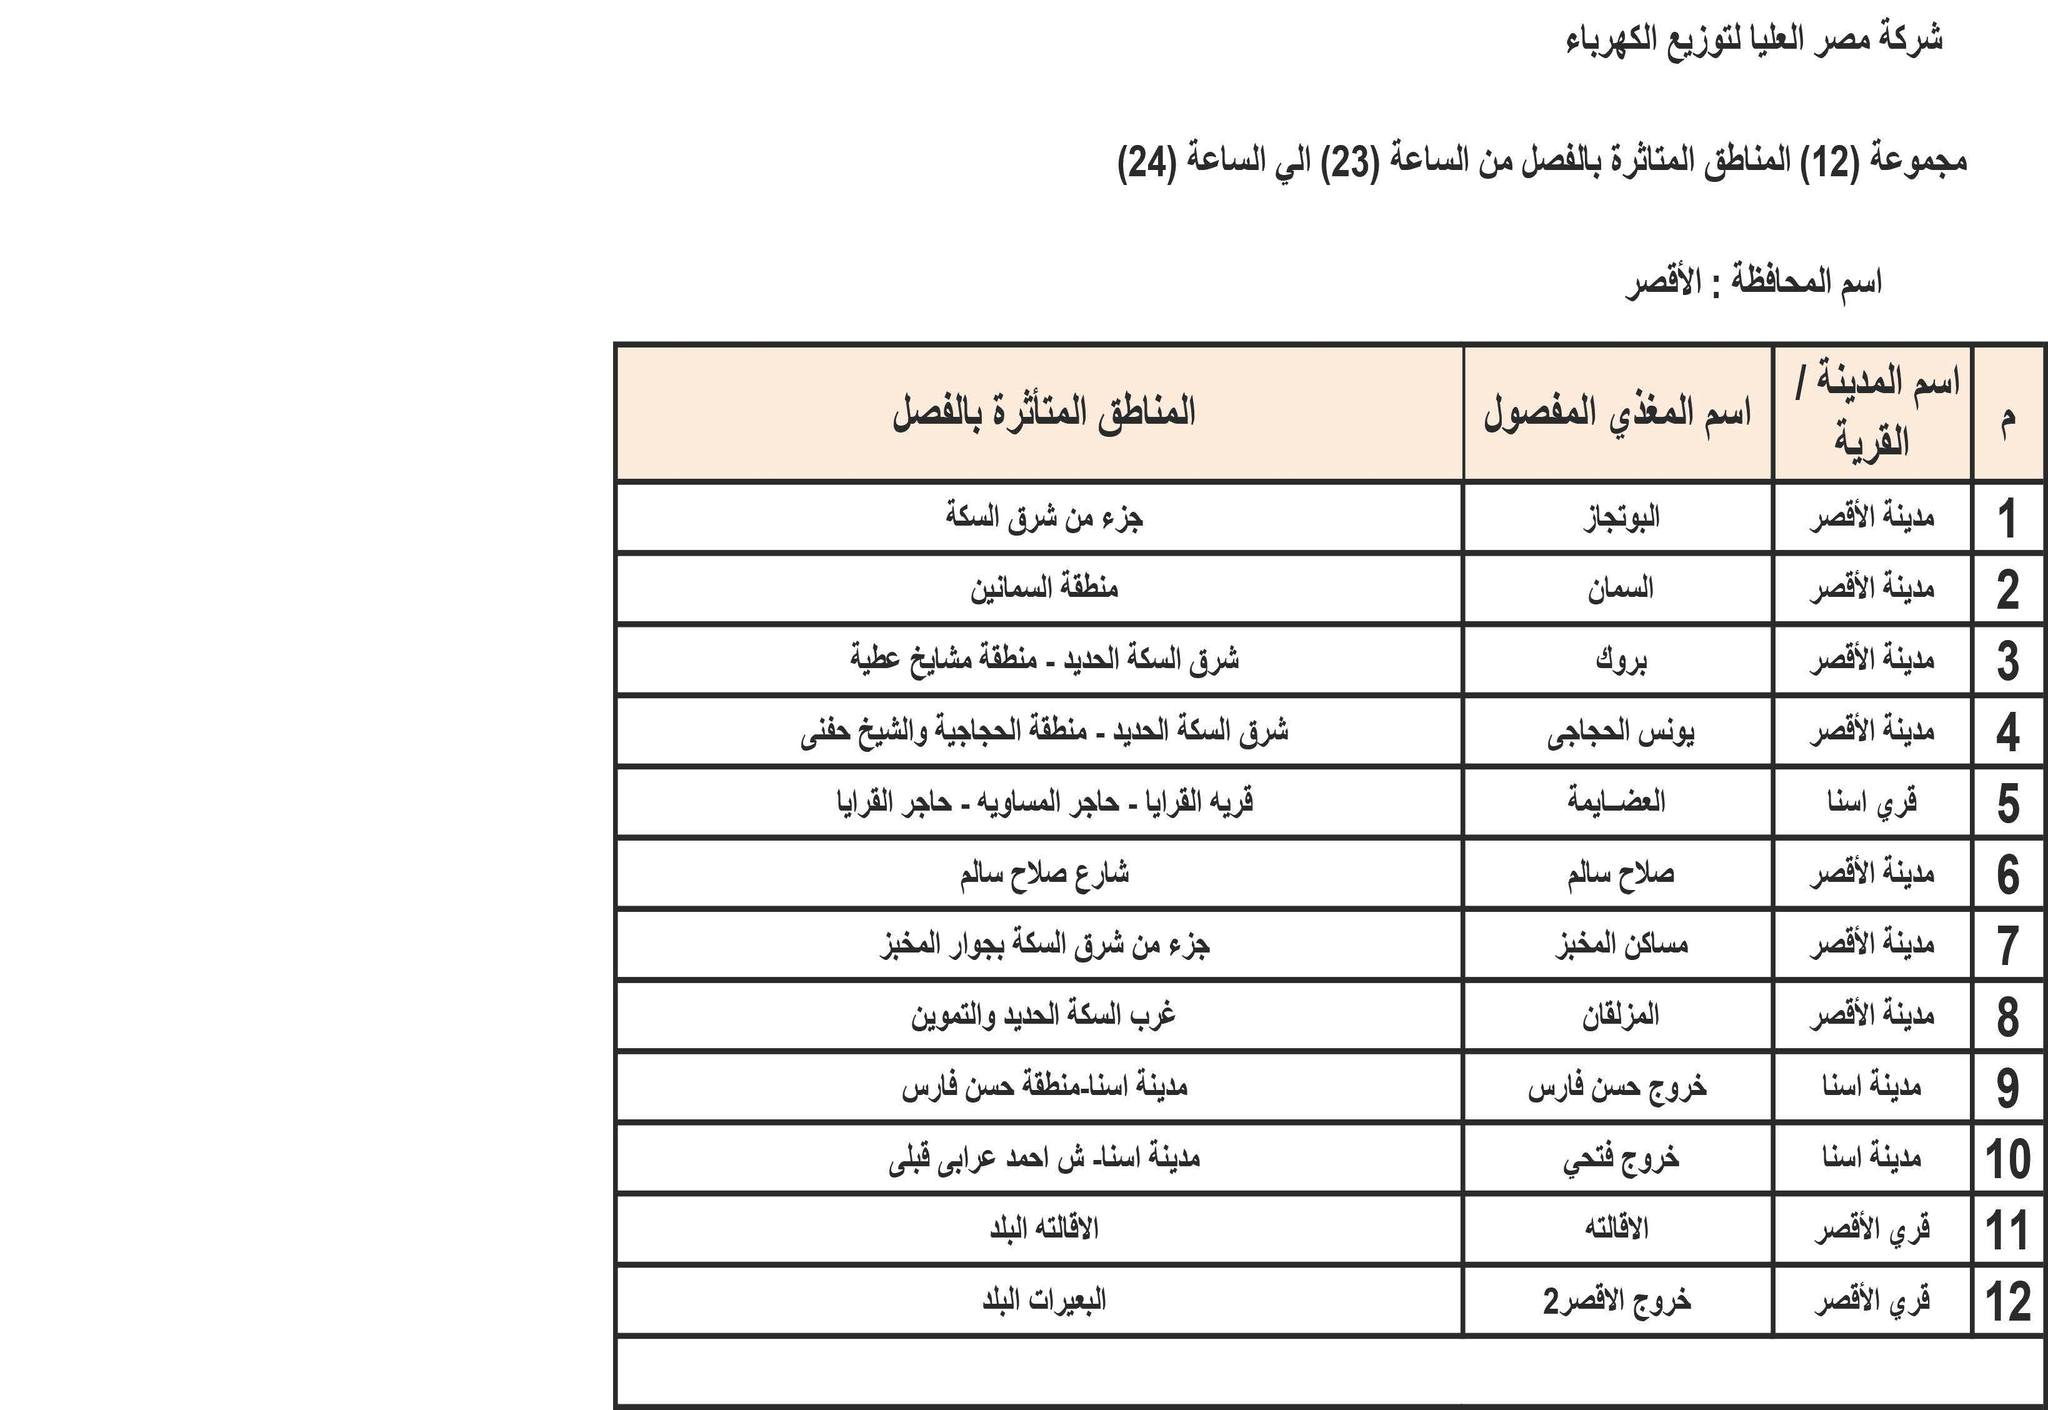 الإعلان عن خطة تخفيف أحمال الكهرباء في محافظة الأقصر 2